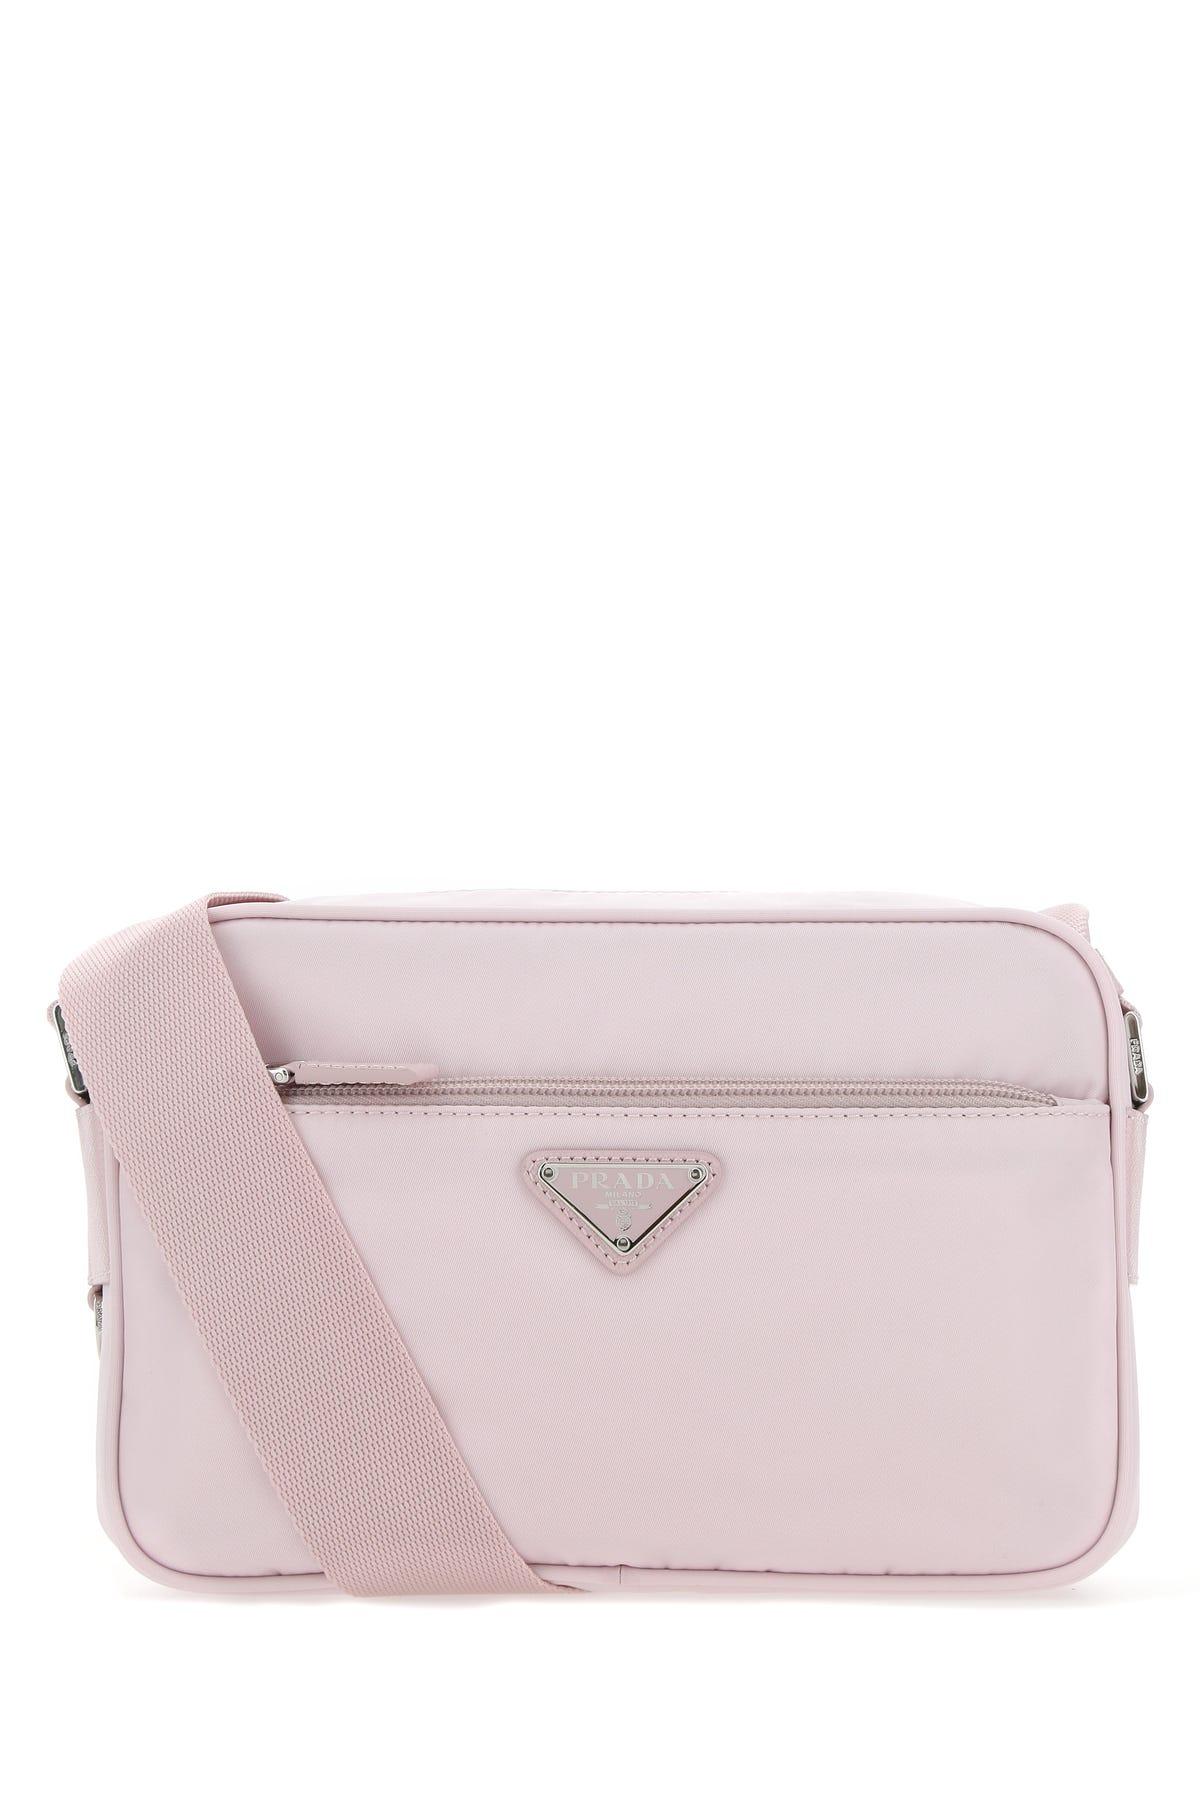 Prada Re-nylon Shoulder Bag In Alabaster Pink